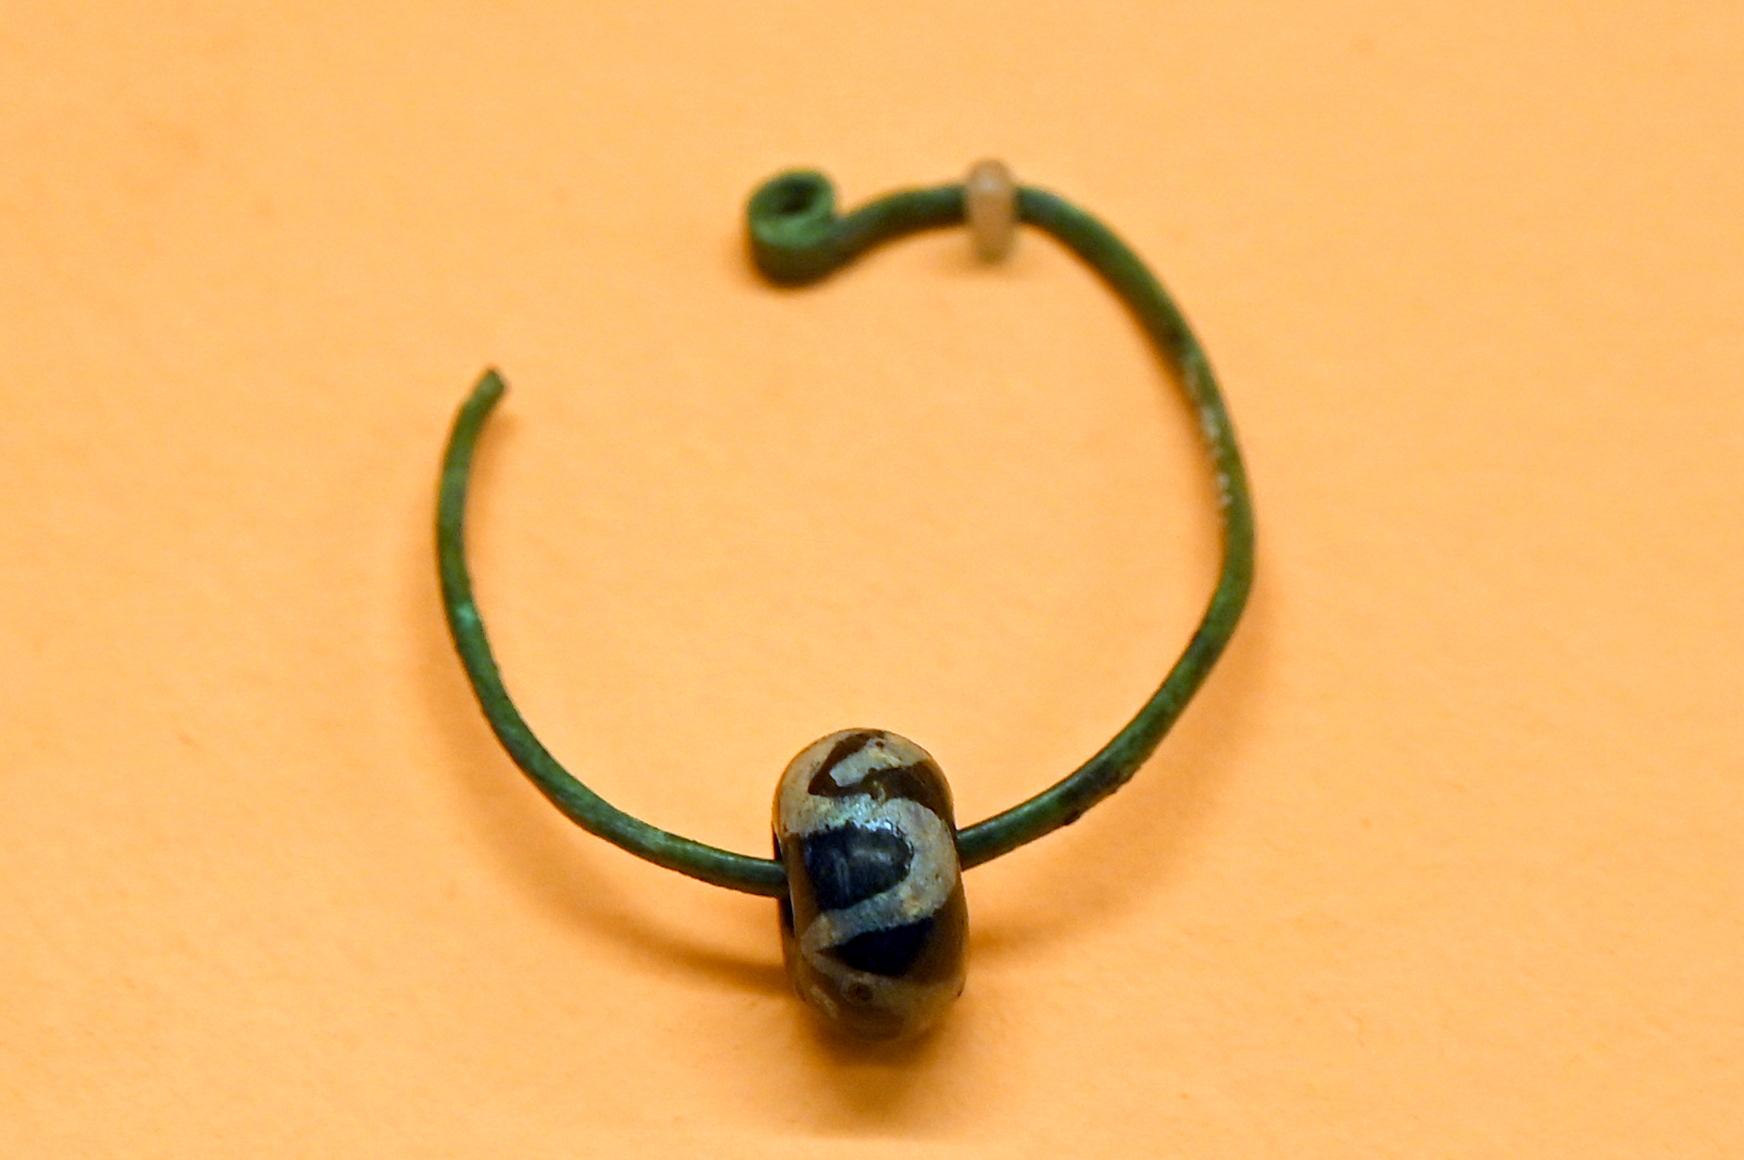 Bronzeohrring mit Perlen aus Bernstein und Glas, Hallstattzeit, 700 - 200 v. Chr., Bild 1/2